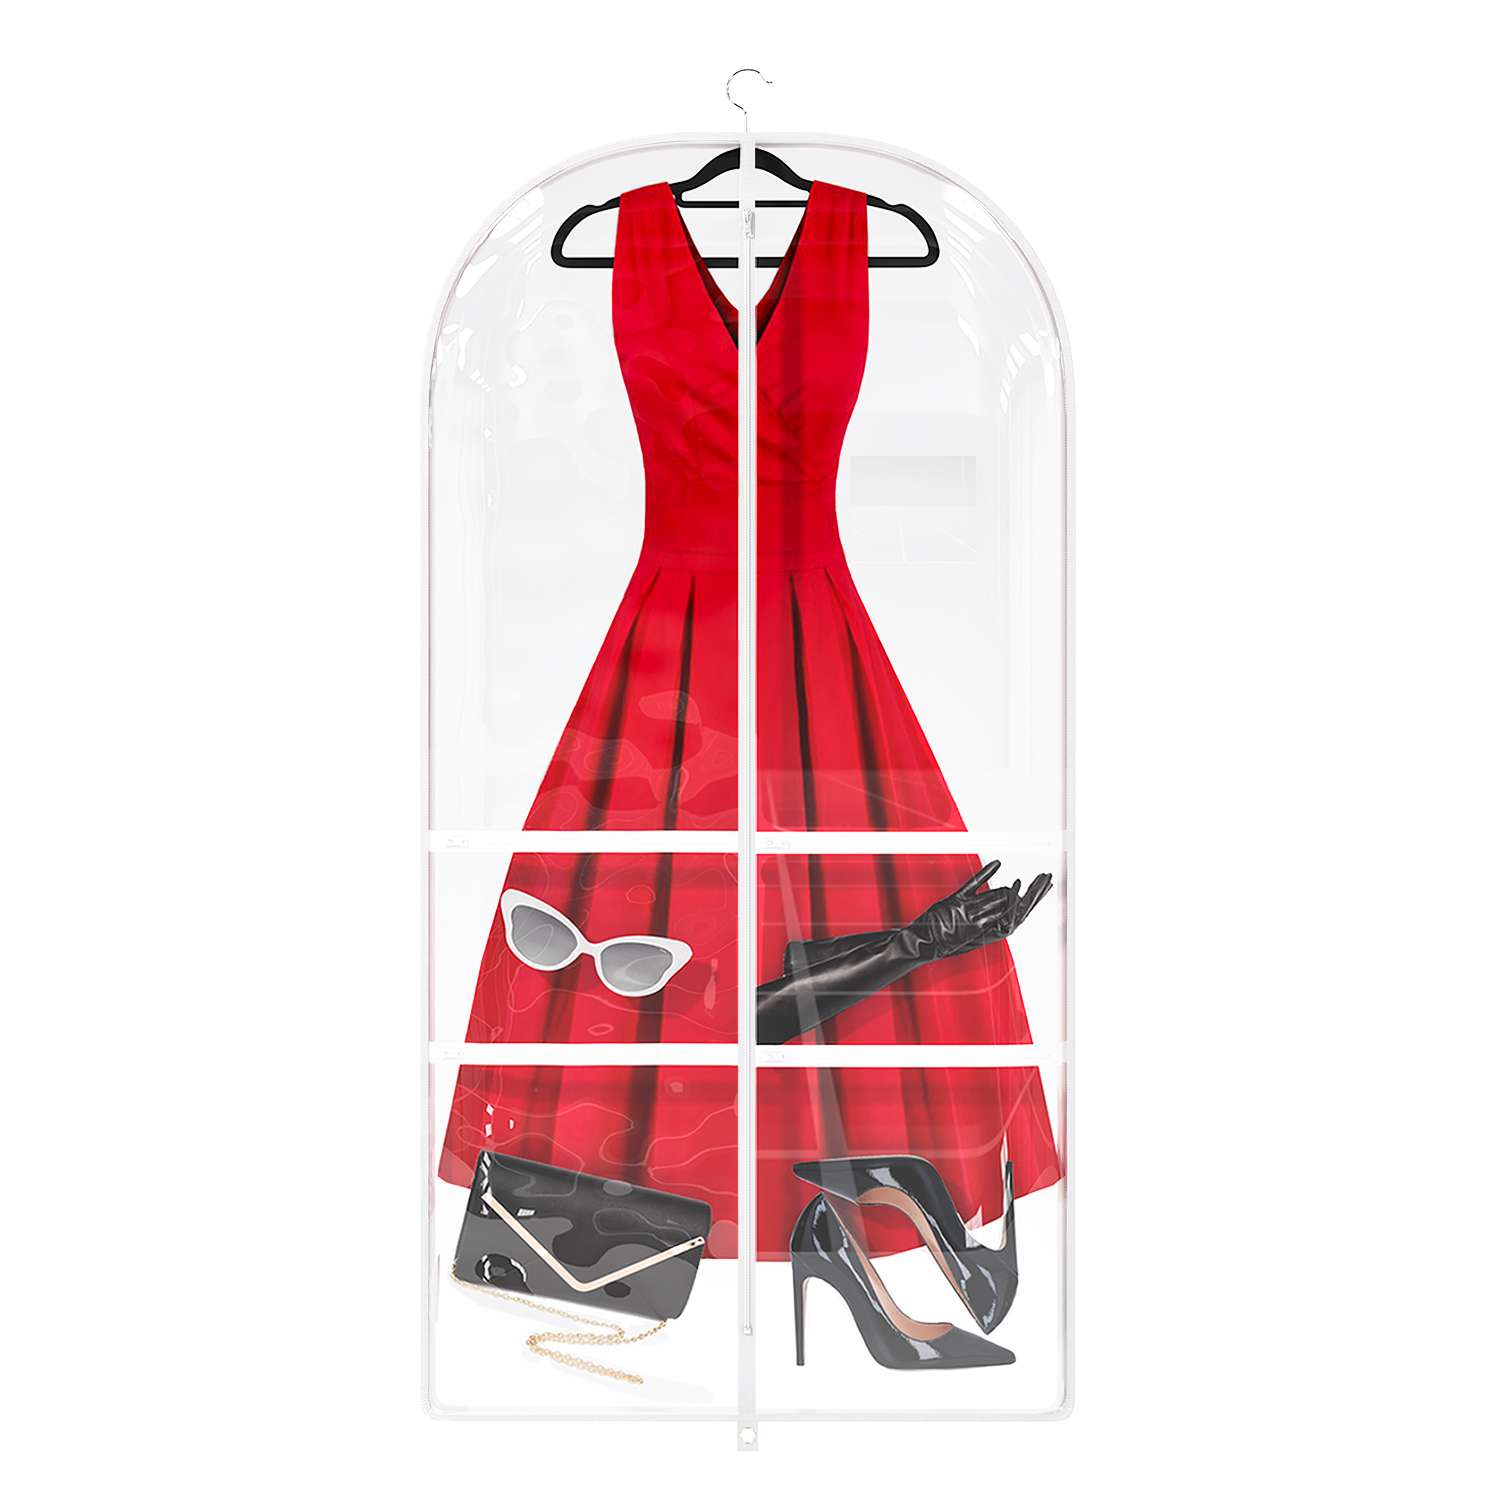 Чехол для одежды Homsu для платьев курток пальто танцевальных костюмов с кармашками для обуви и аксессуаров - фото 2